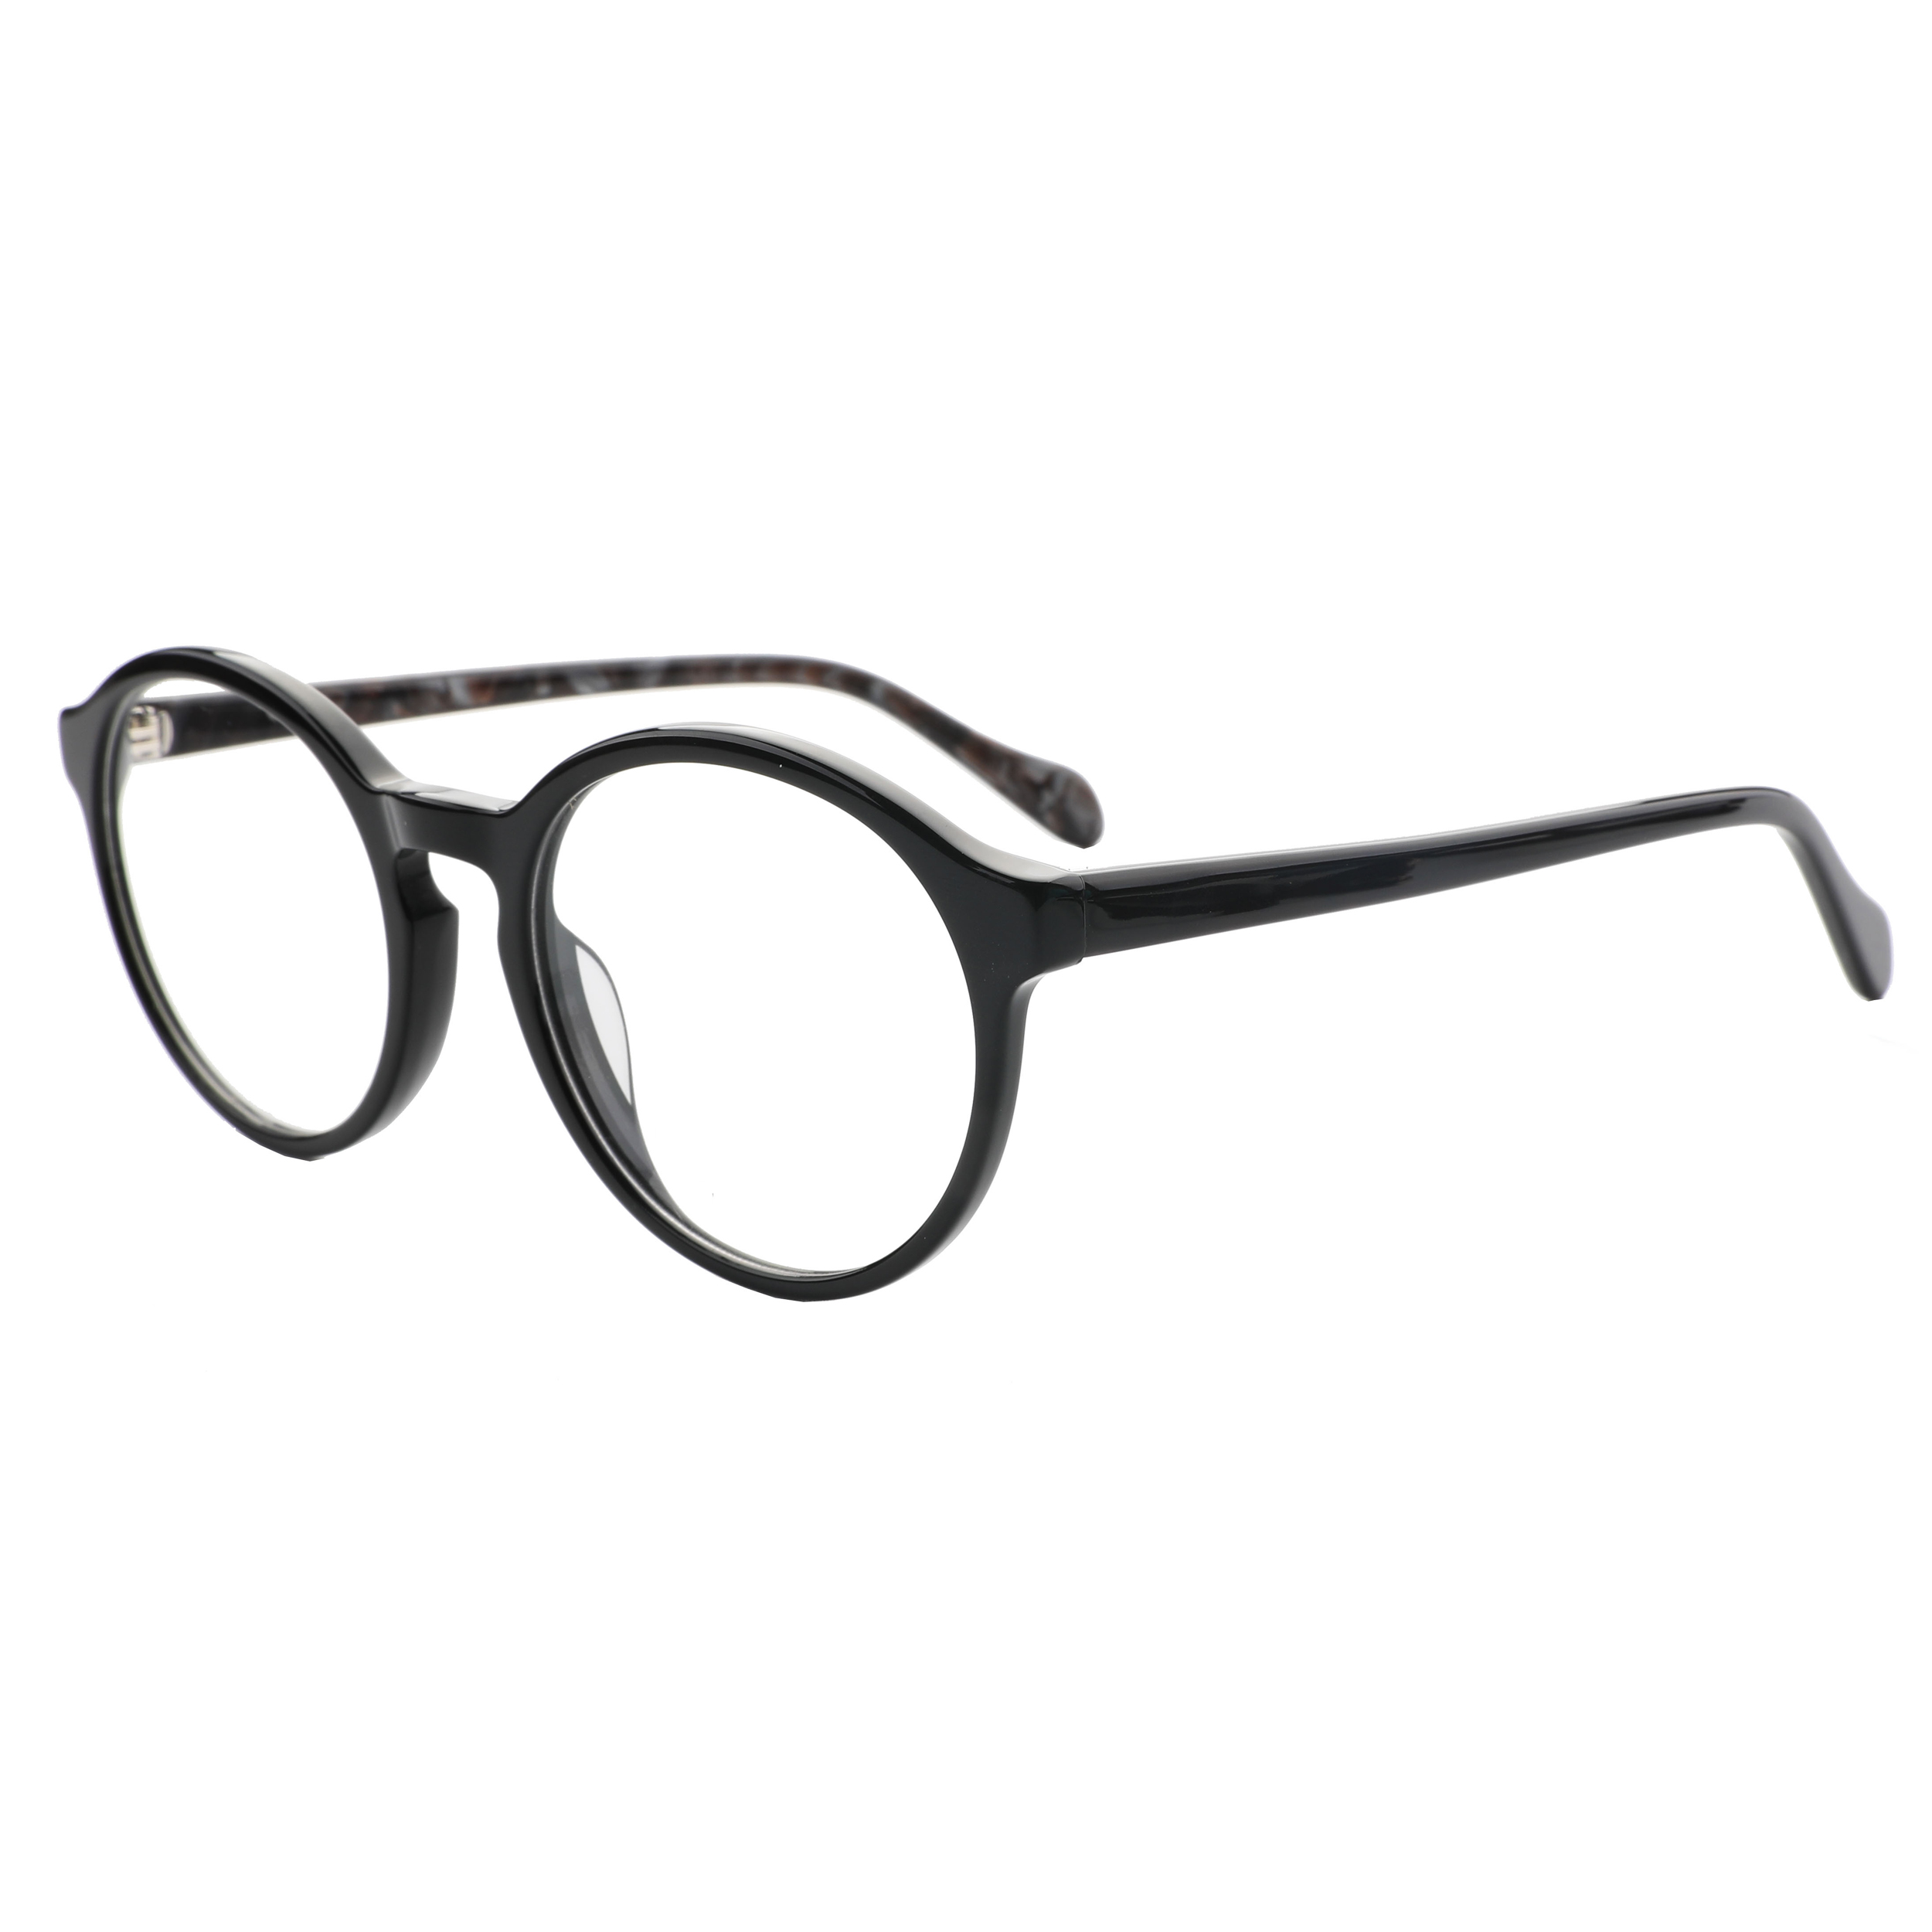 نکته خرید - قیمت روز فریم عینک طبی مدل LG045C1 Acetate Stone Pattern خرید